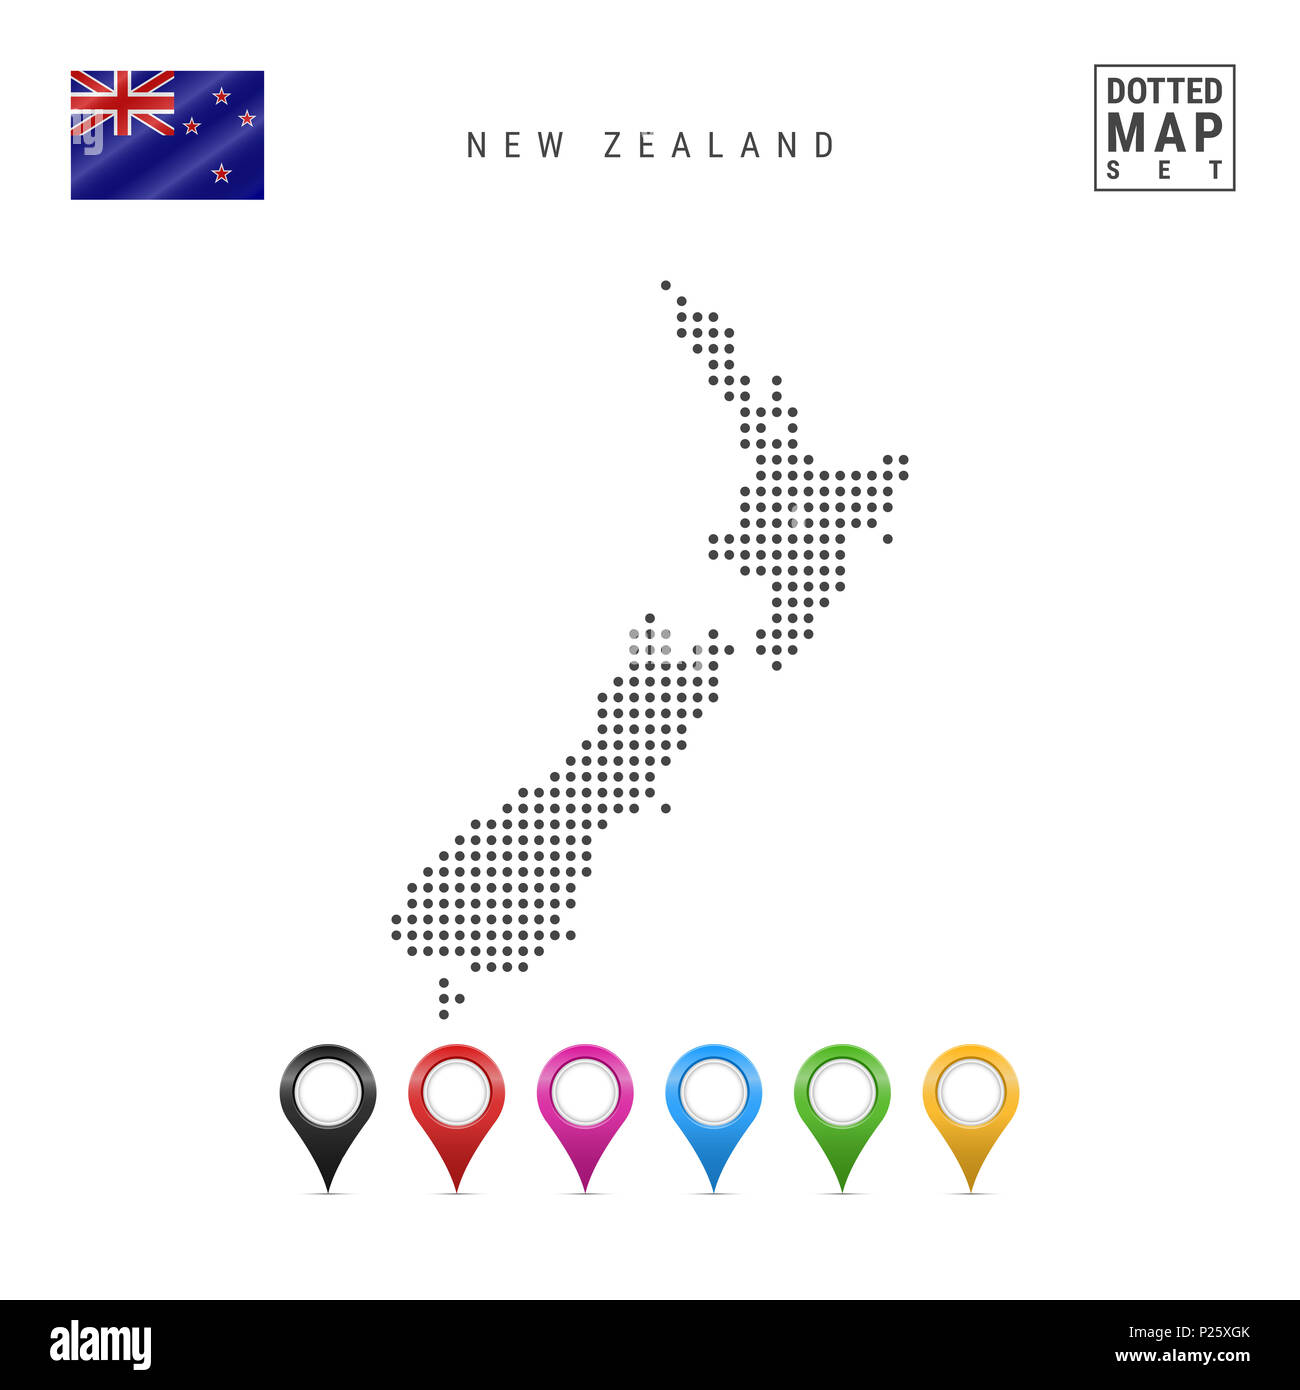 La carte à points de la Nouvelle-Zélande. Silhouette simple de la Nouvelle-Zélande. Le drapeau national de la Nouvelle-Zélande. Ensemble de marqueurs de la carte multicolore. Illustration isolé Banque D'Images